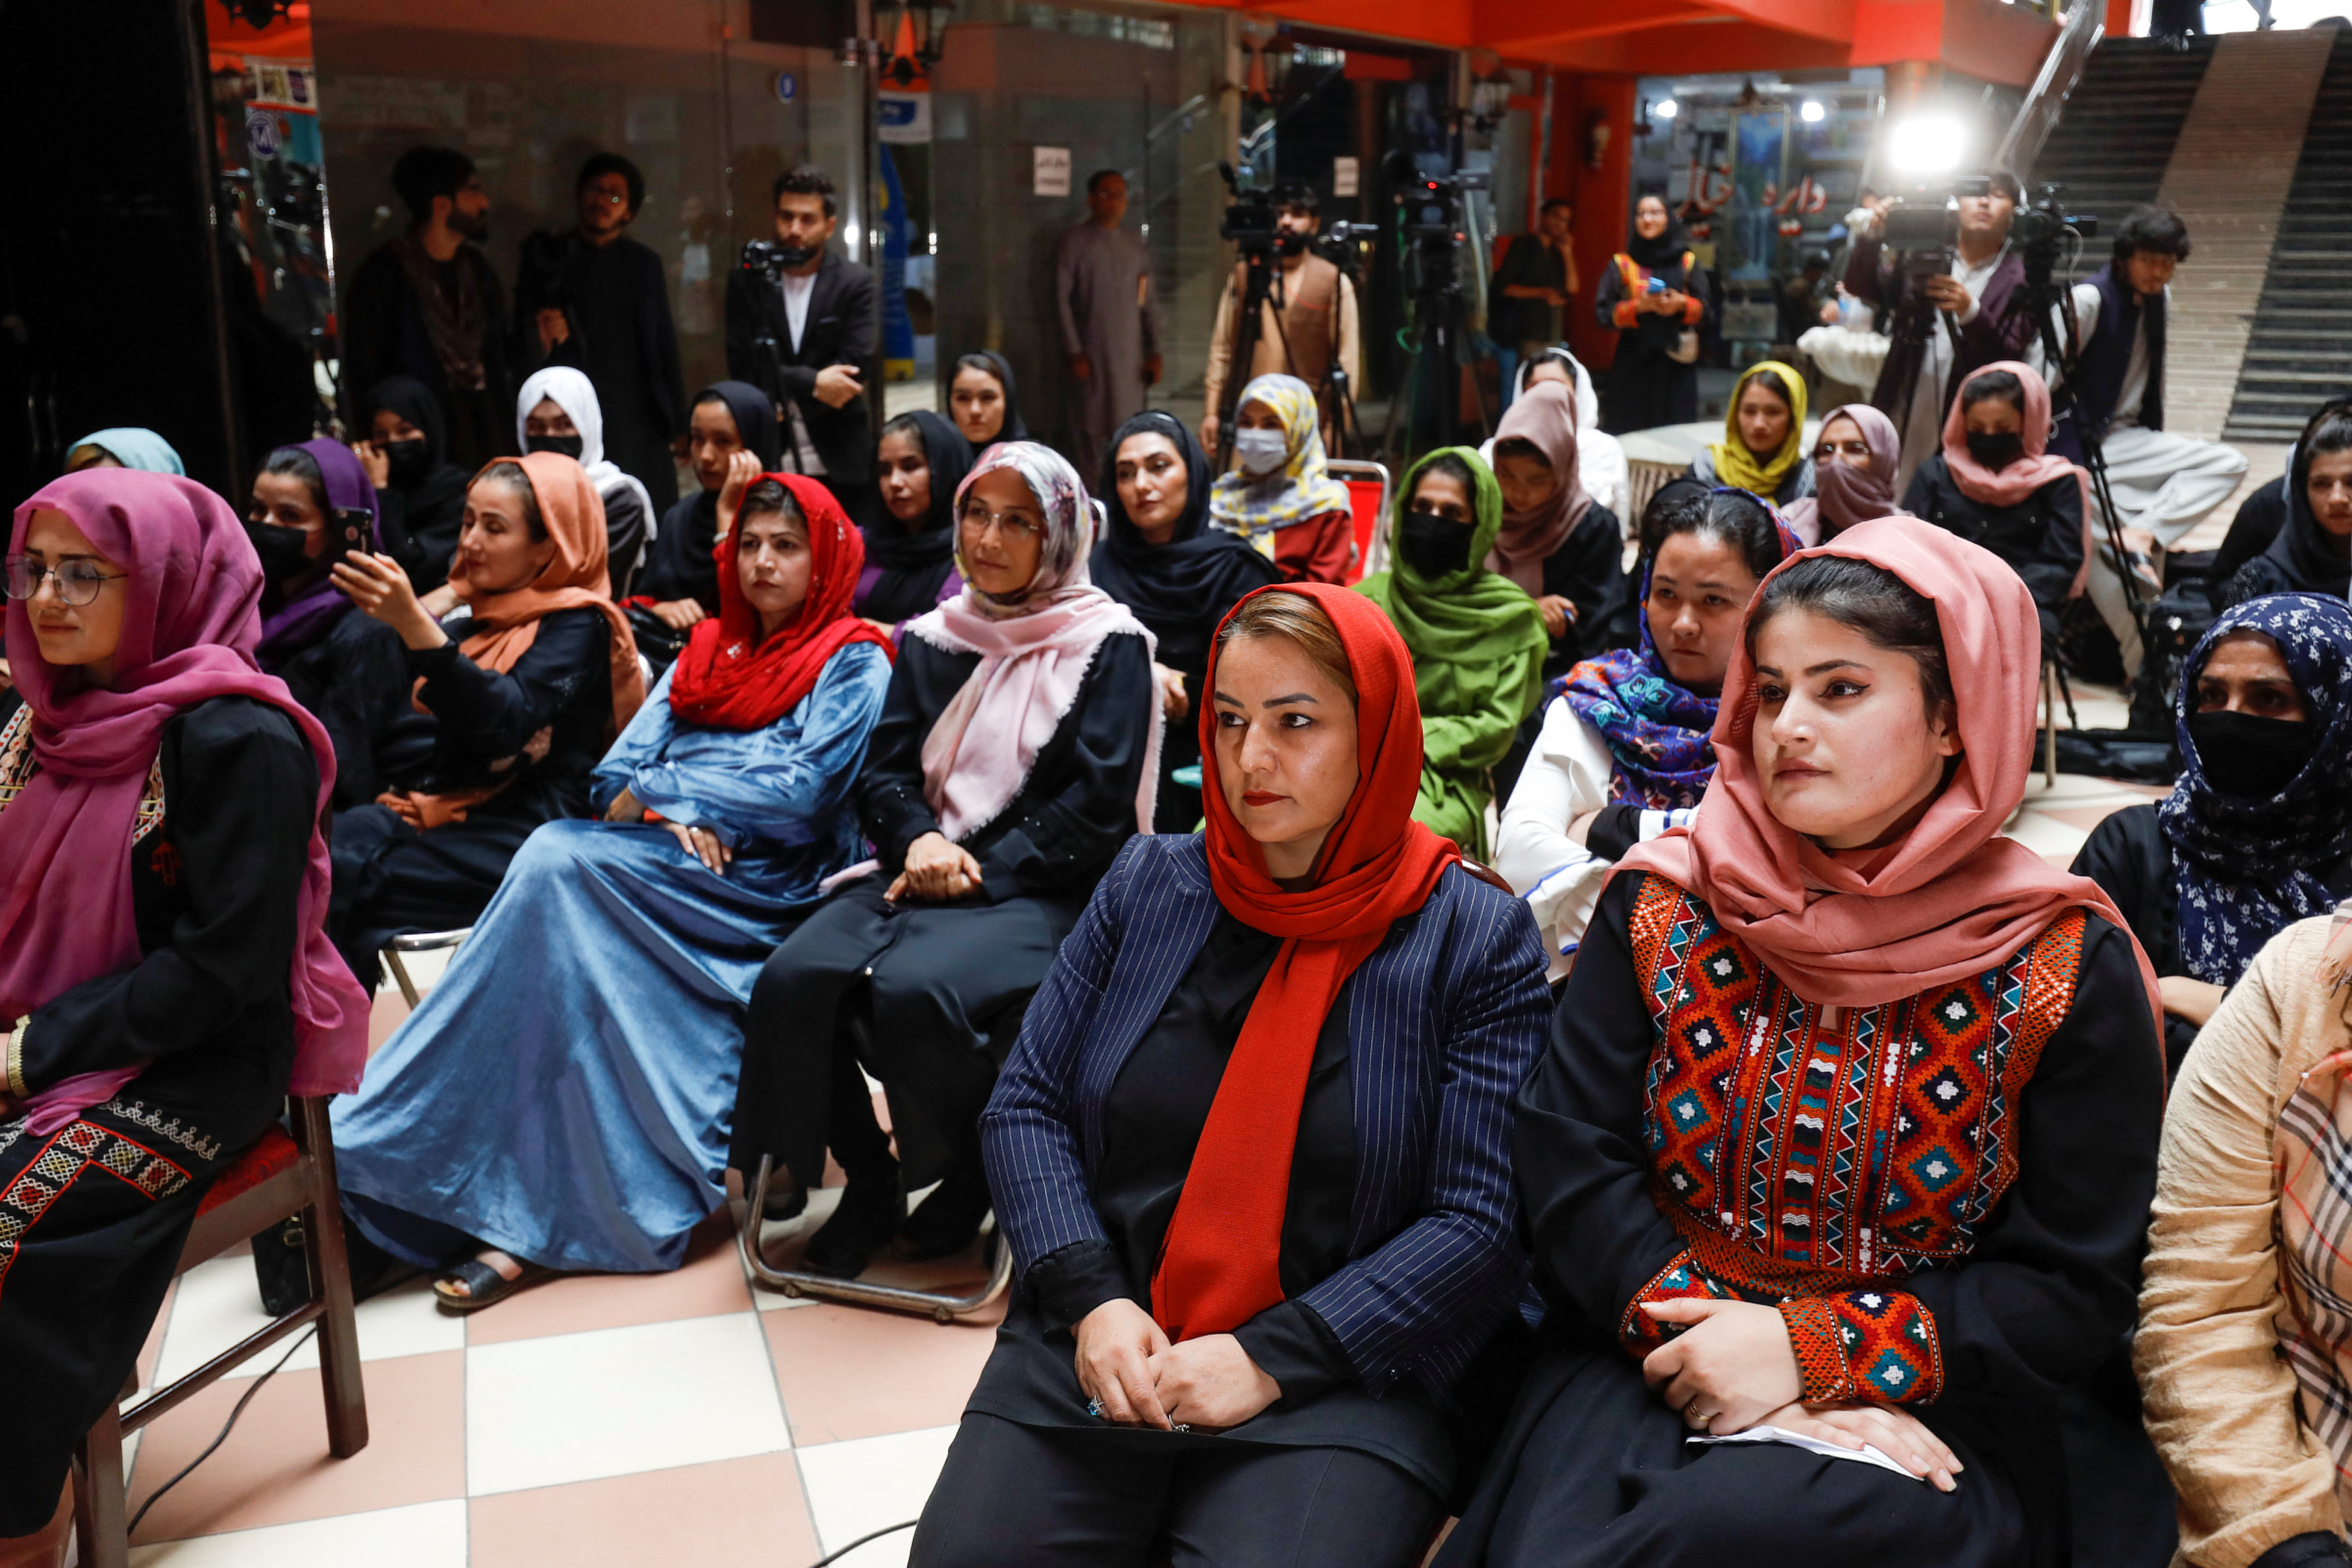 Zhulia Parsi y Leila Basim, las fundadoras de la biblioteca de mujeres, asisten a la inauguración de la biblioteca de mujeres en Kabul, Afganistán. Es de los pocos lugares que sigue sin ser restringido.
REUTERS/Ali Khara